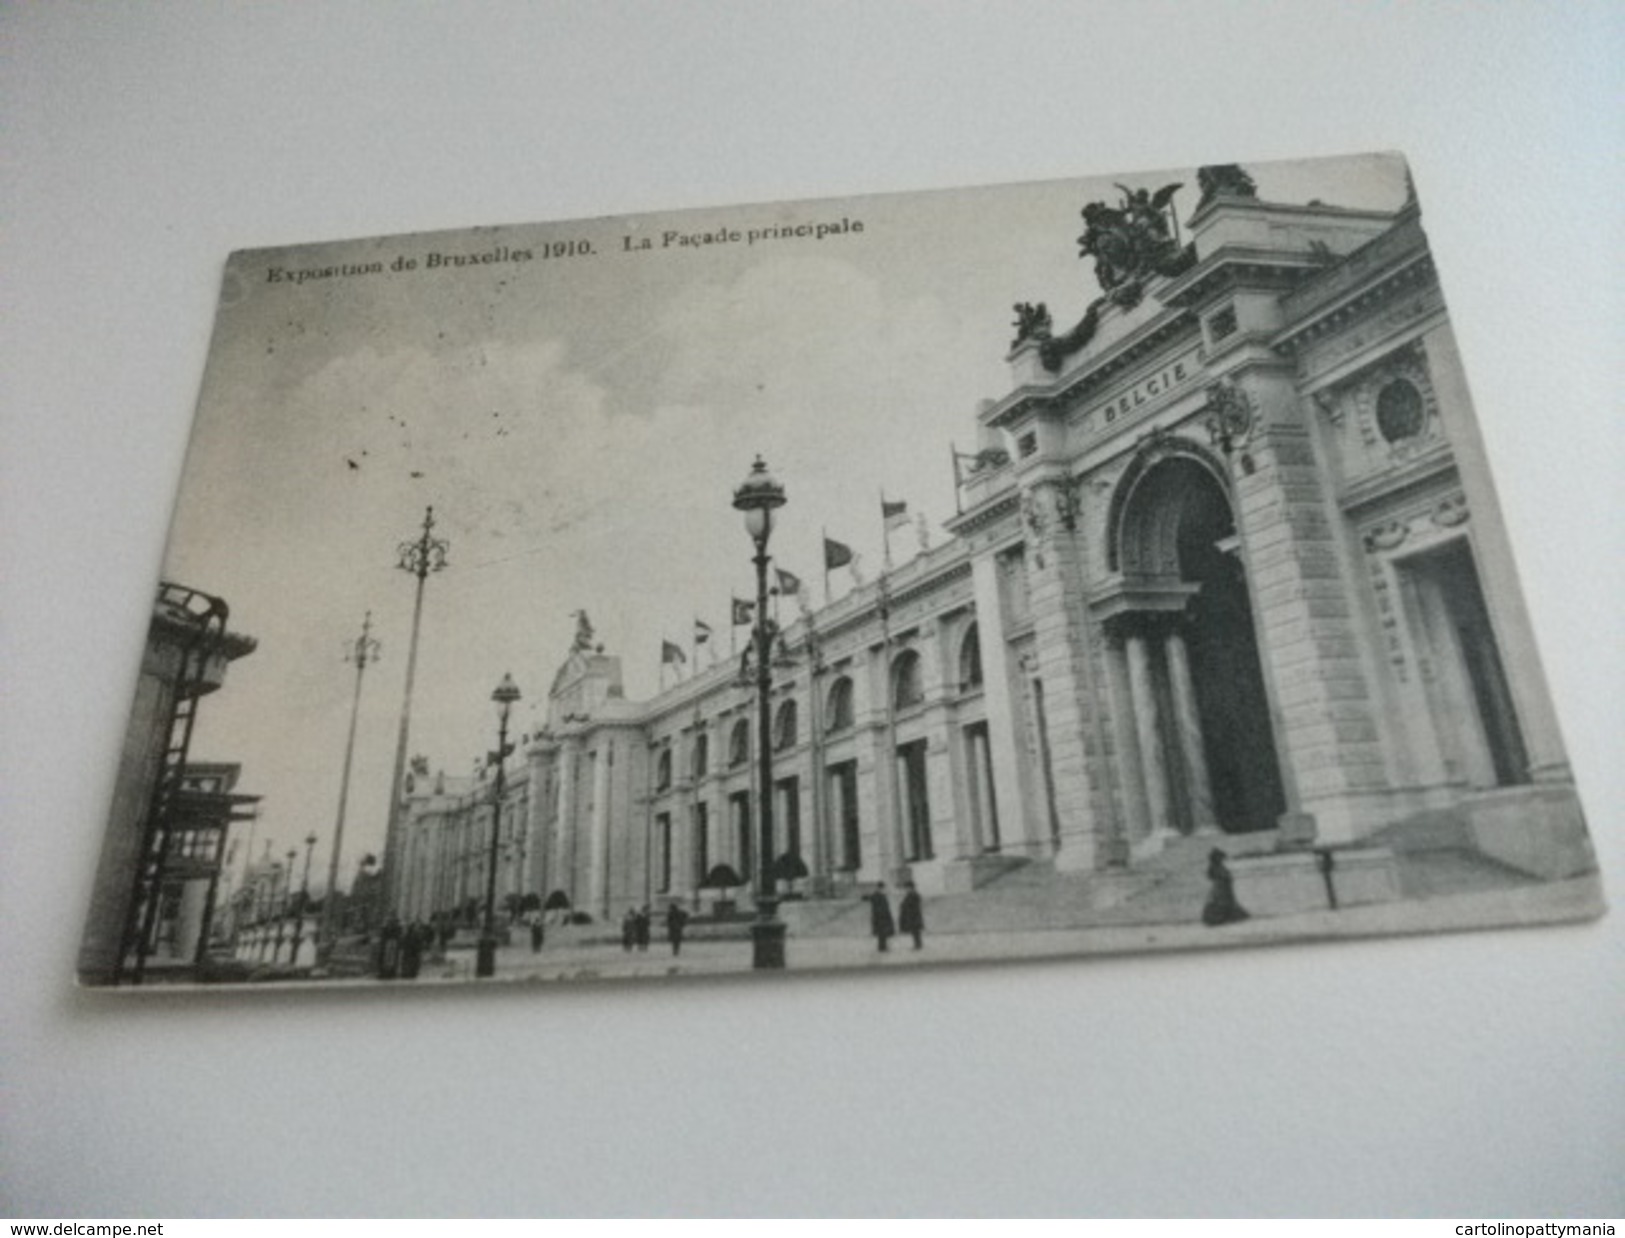 ESPOSIZIONE EXPOSITION DE BRUXELLES 1910 LA FACCIATA PRINCIPALE - Esposizioni